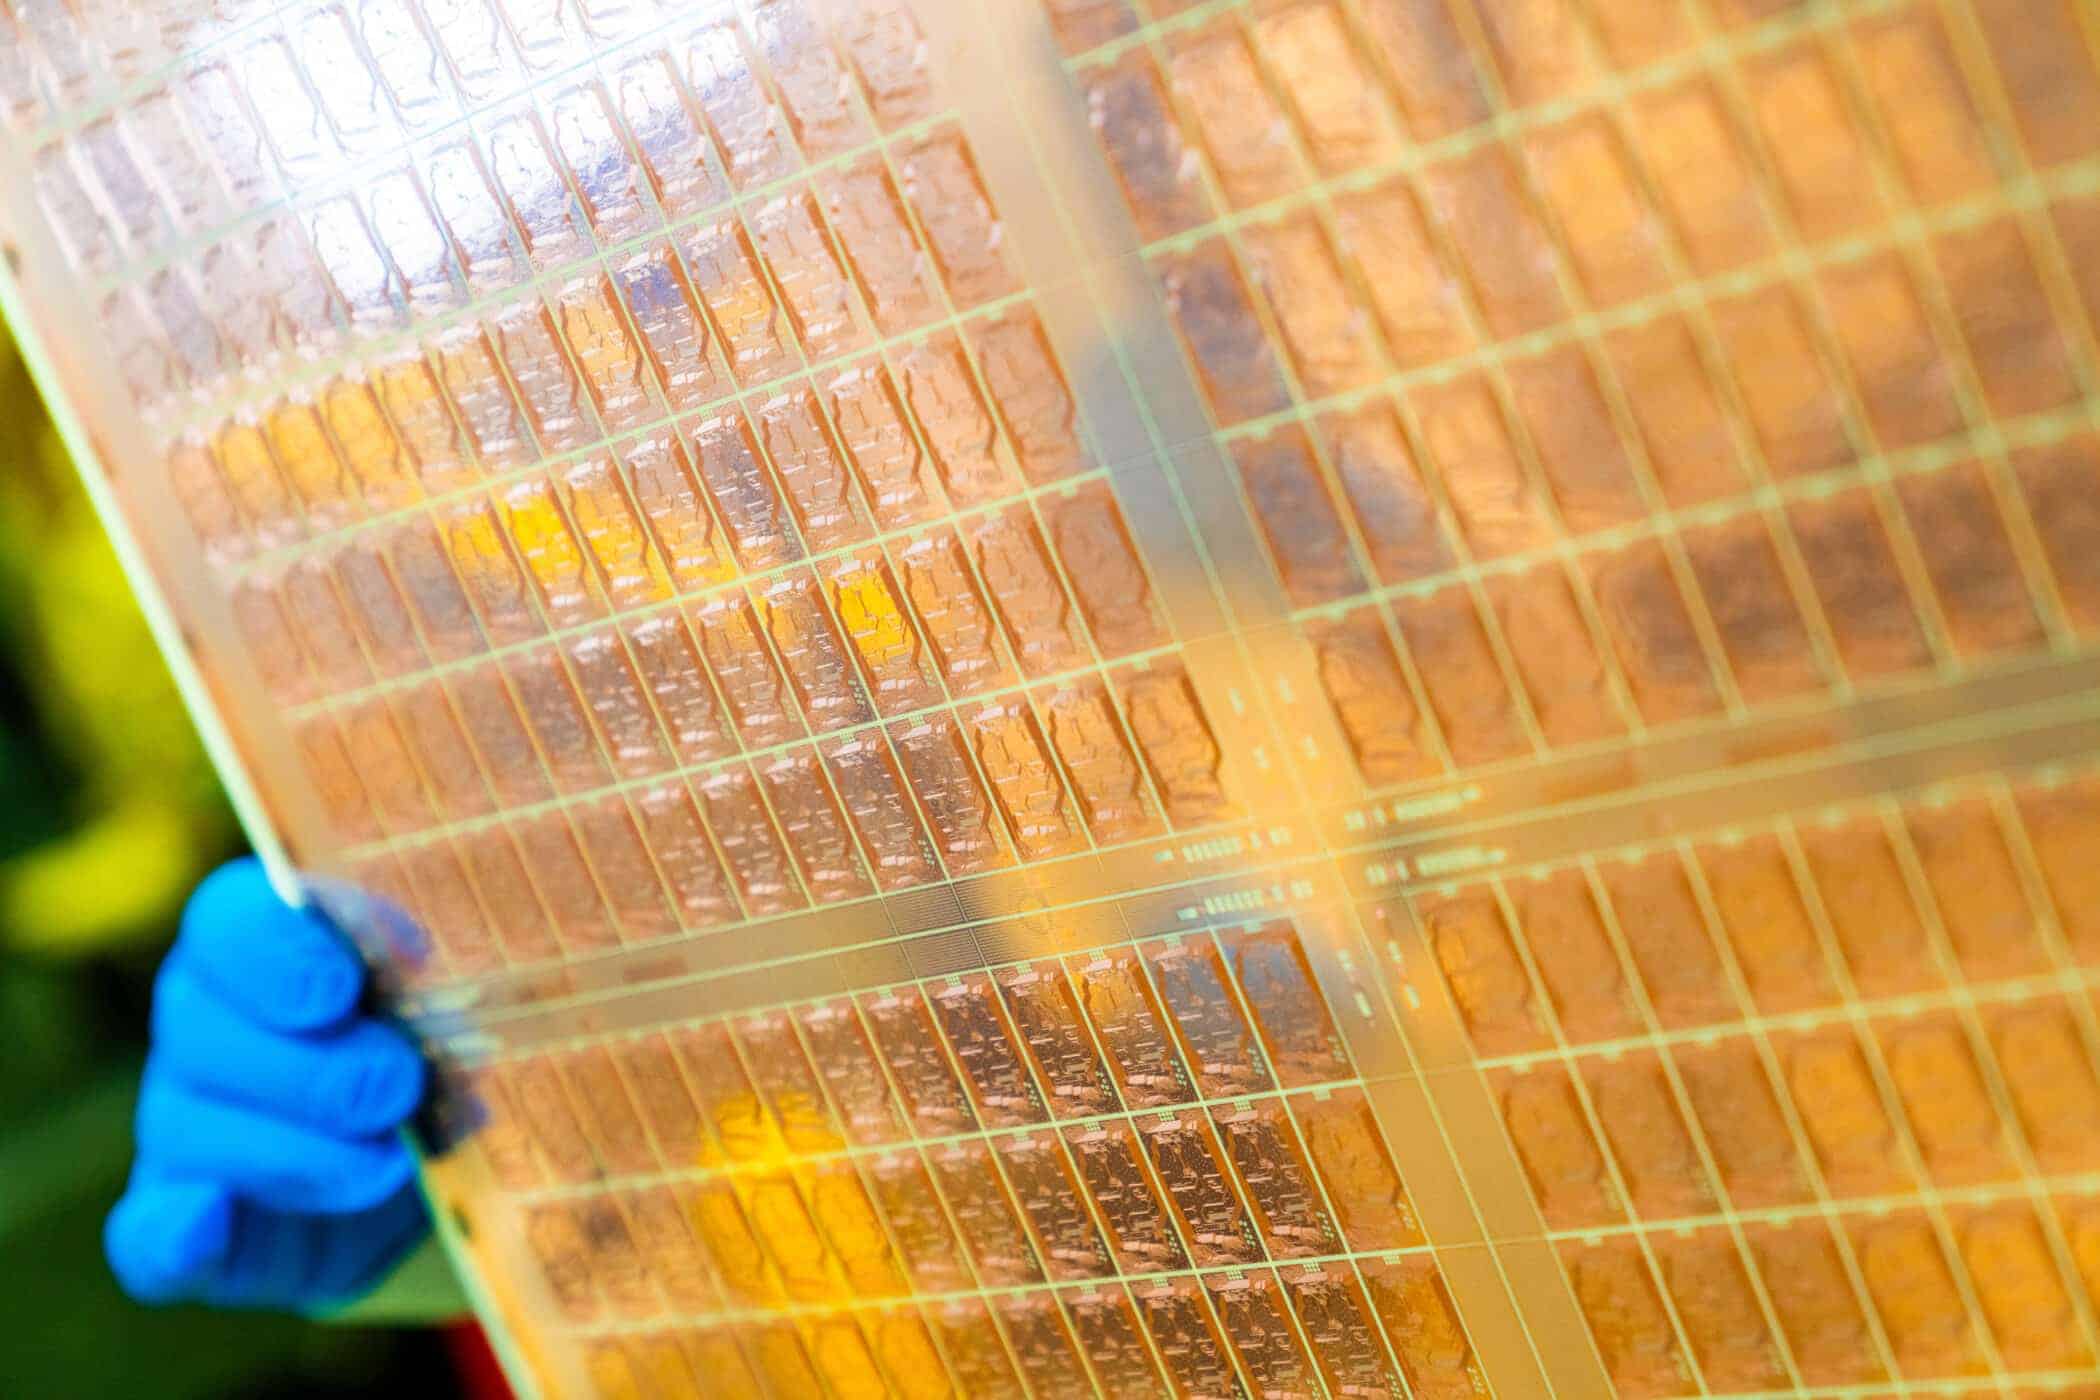 Intelはガラスコア基板を用いたチップによって1兆トランジスタを目指す